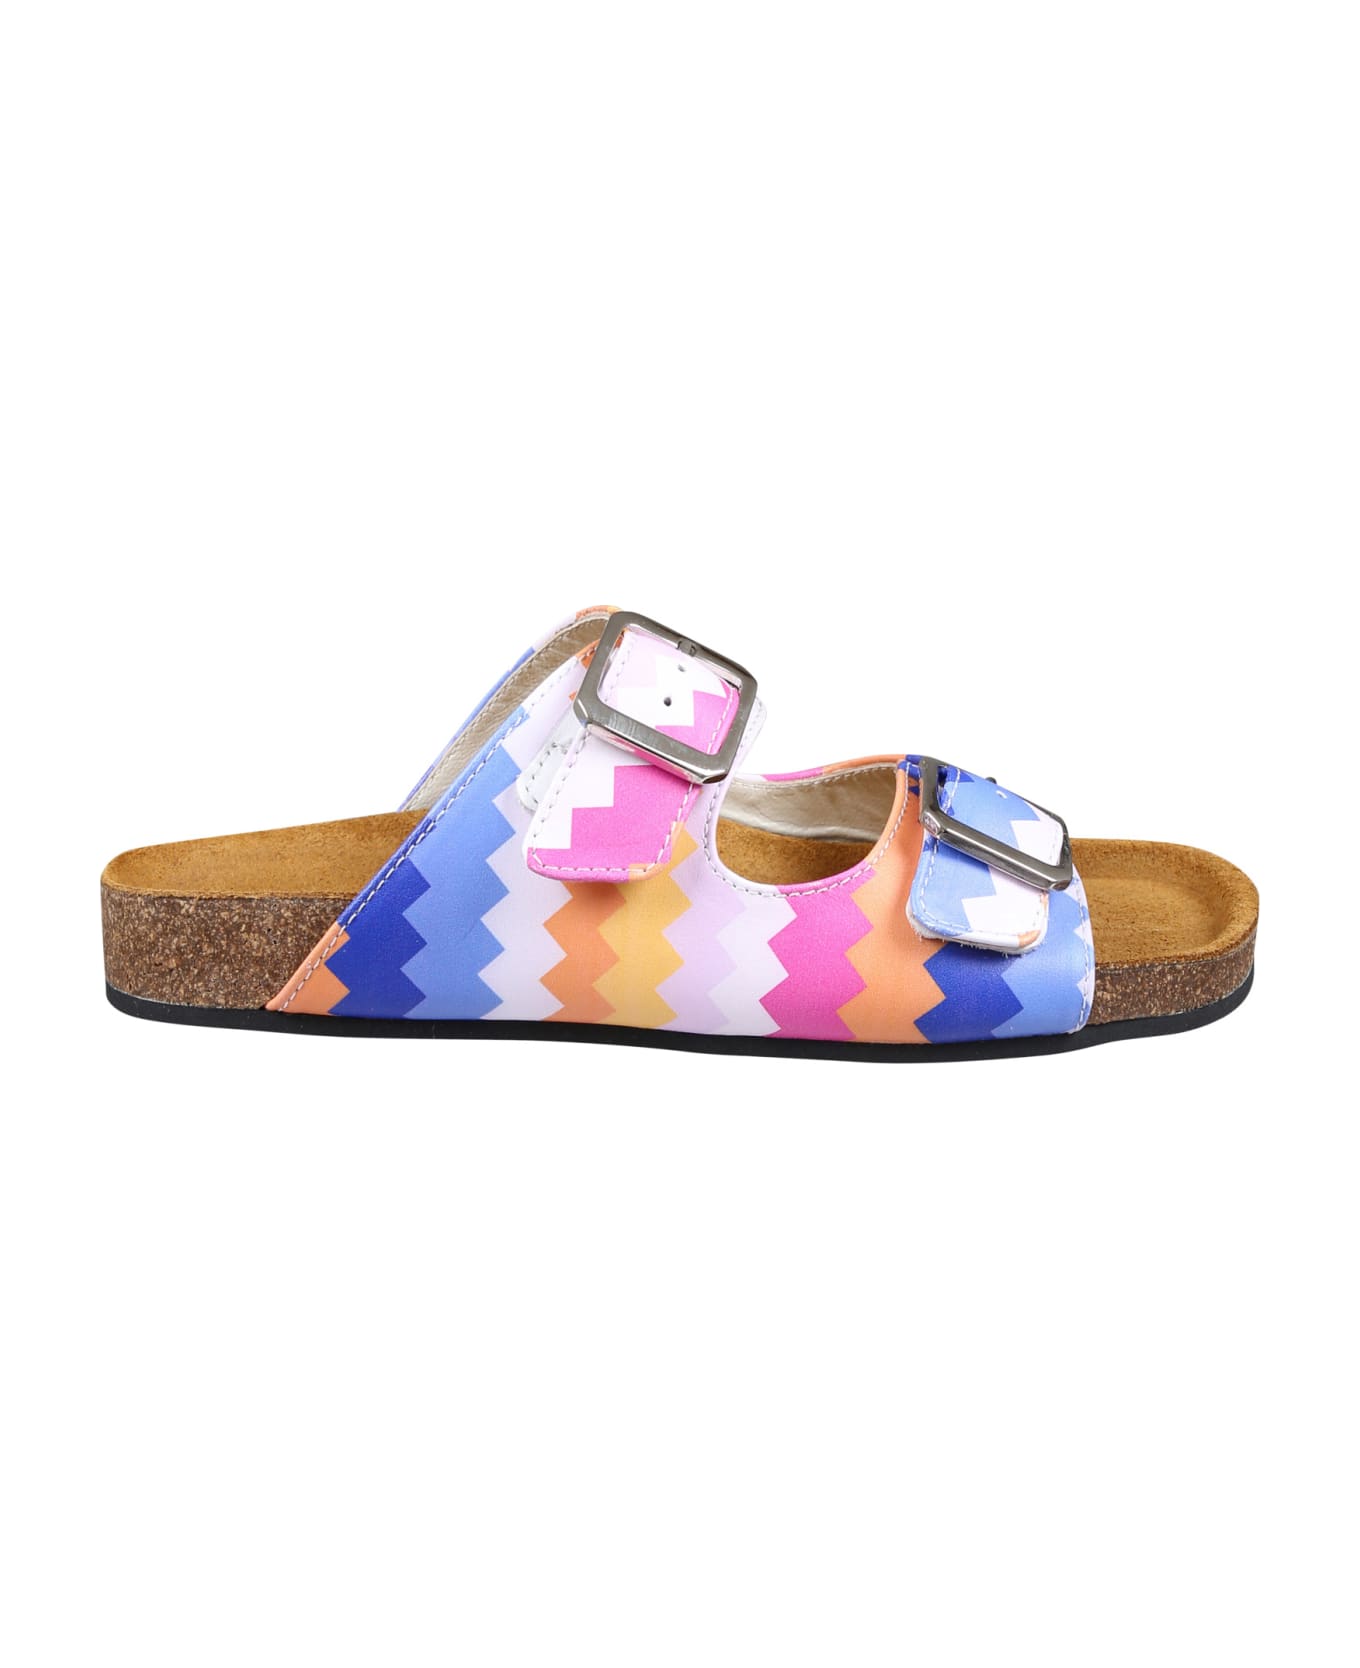 Missoni Multicolor Sandals For Girl - Multicolor